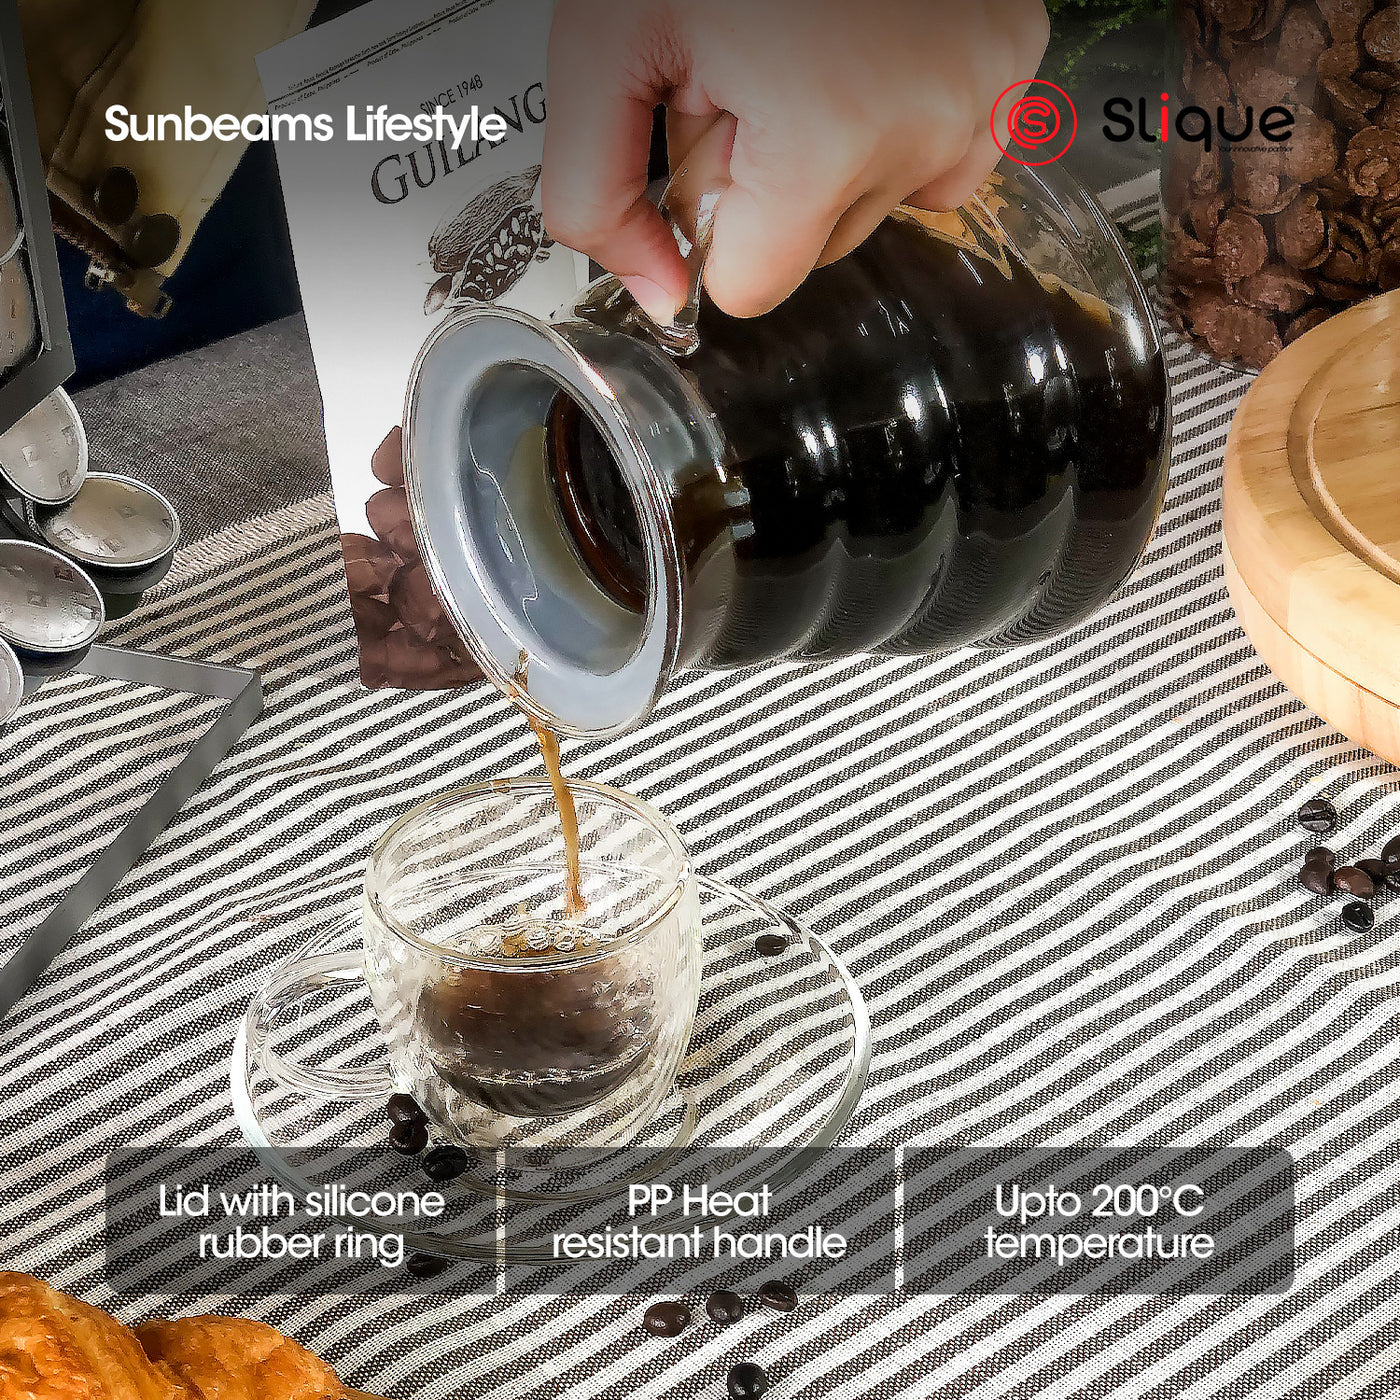 SLIQUE Premium Coffee Server 500ml | 0.5L